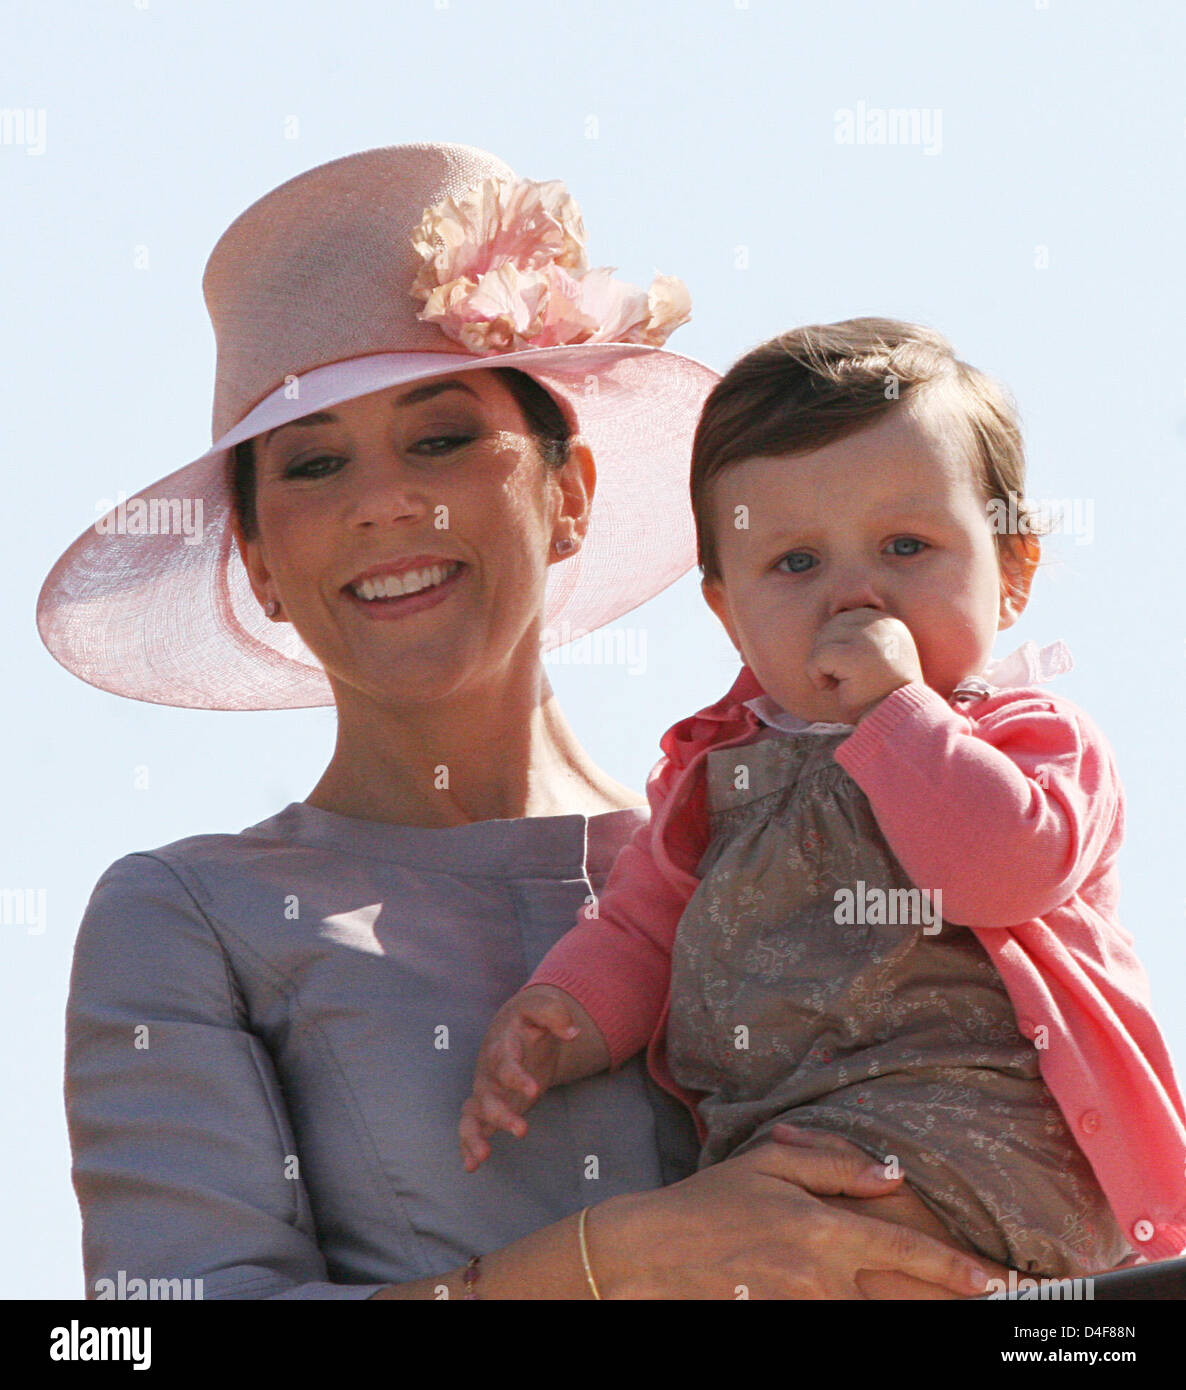 La princesse Mary et sa fille la Princesse Isabella arrivent à Svendborg, Danemark, 18 juin 2008. La famille royale est sur une croisière d'été de trois jours à travers le Danemark du Sud sur son yacht "annebrog'. Photo : Albert Nieboer (Pays-Bas) Banque D'Images